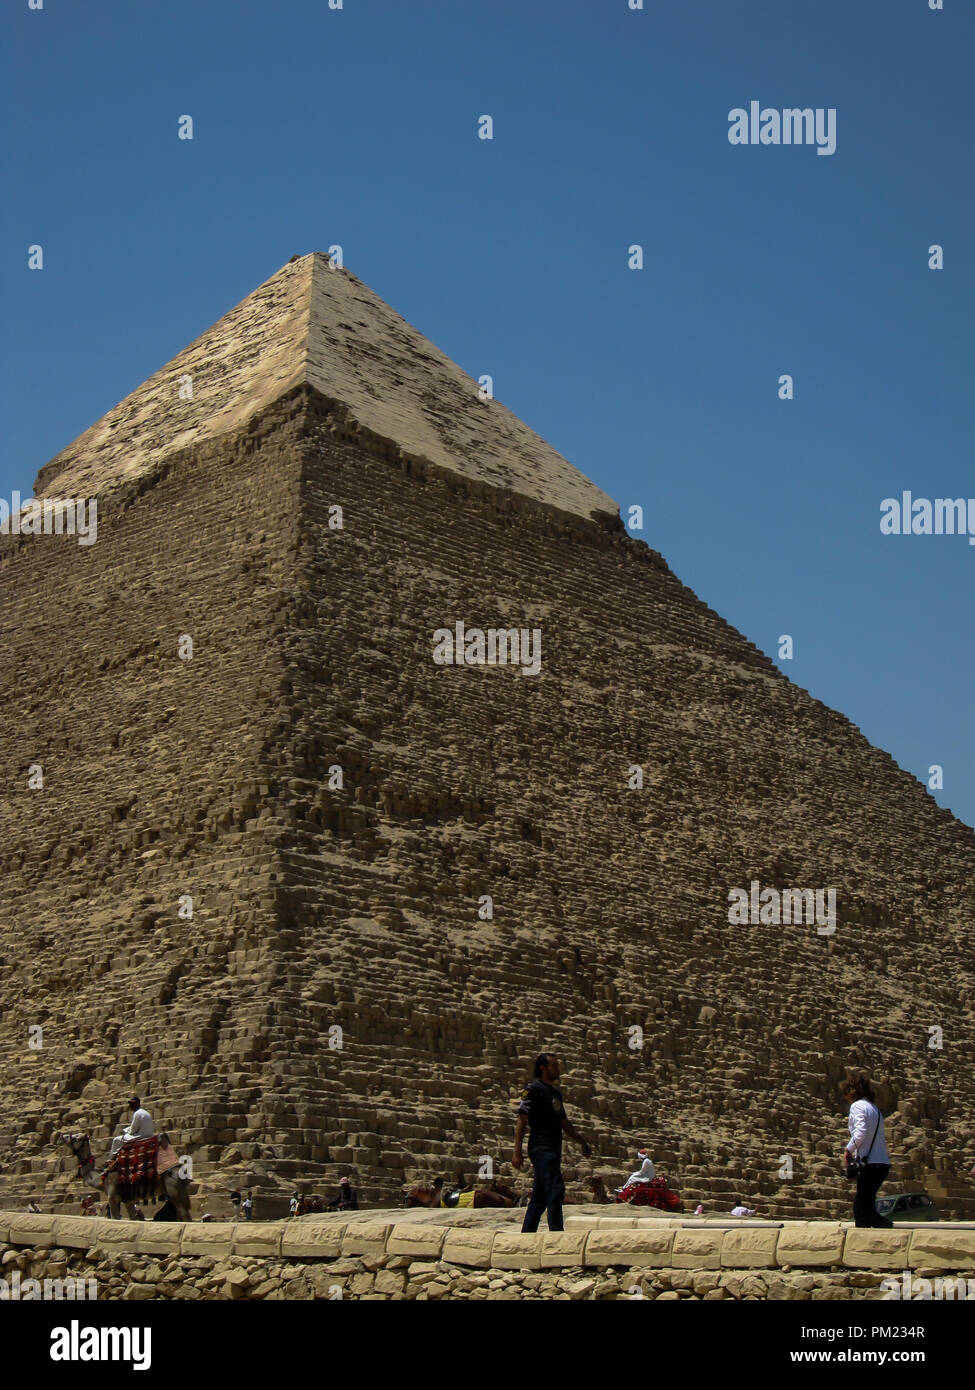 La grande pyramide de Gizeh, également connu sous le nom de Khufu ou Khéops, une importante destination touristique et site archéologique de Gizeh, Egypte Banque D'Images